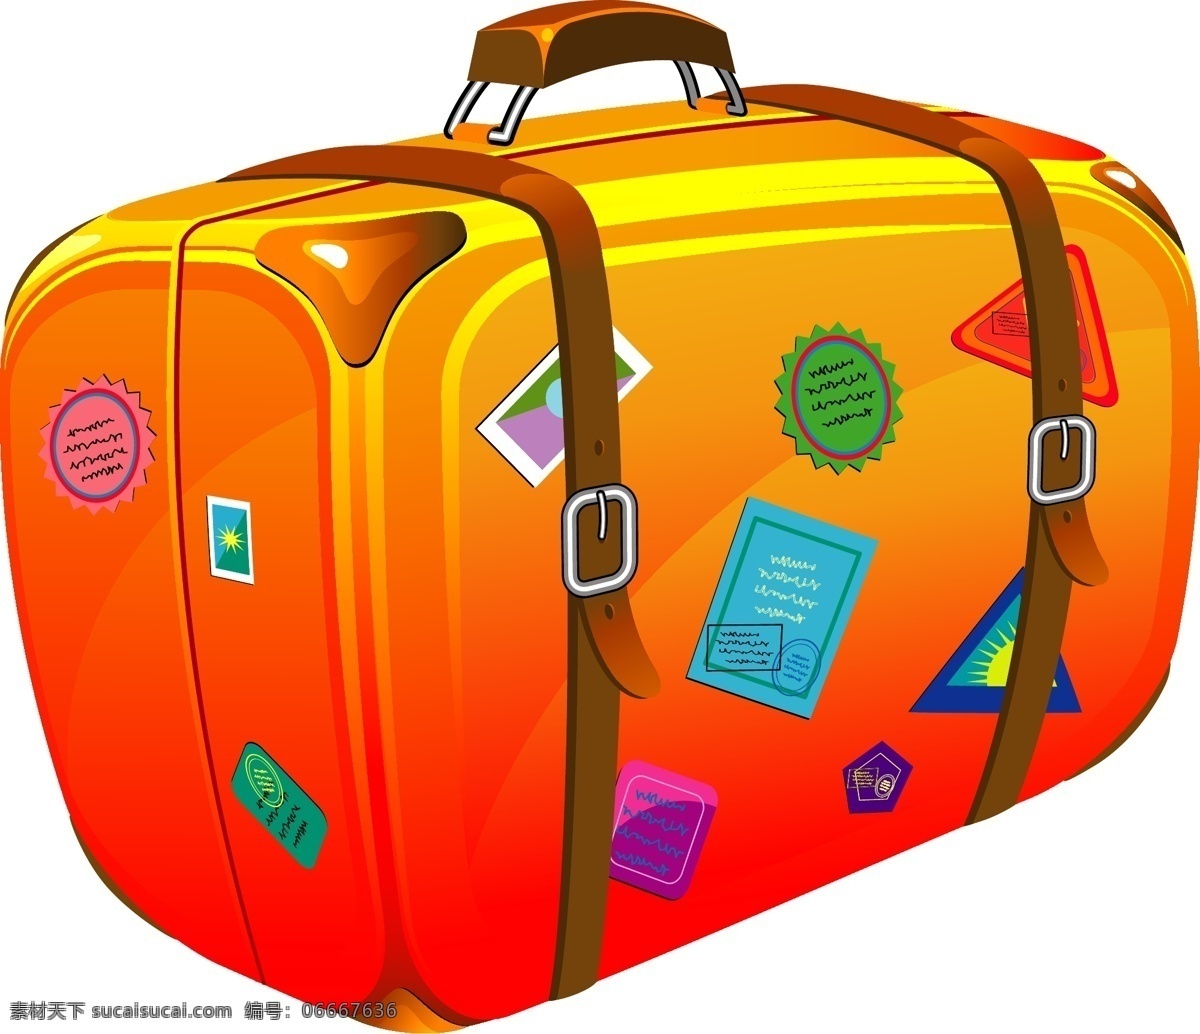 旅行手提箱 旅行 手提箱 橙黄色 可爱 白色